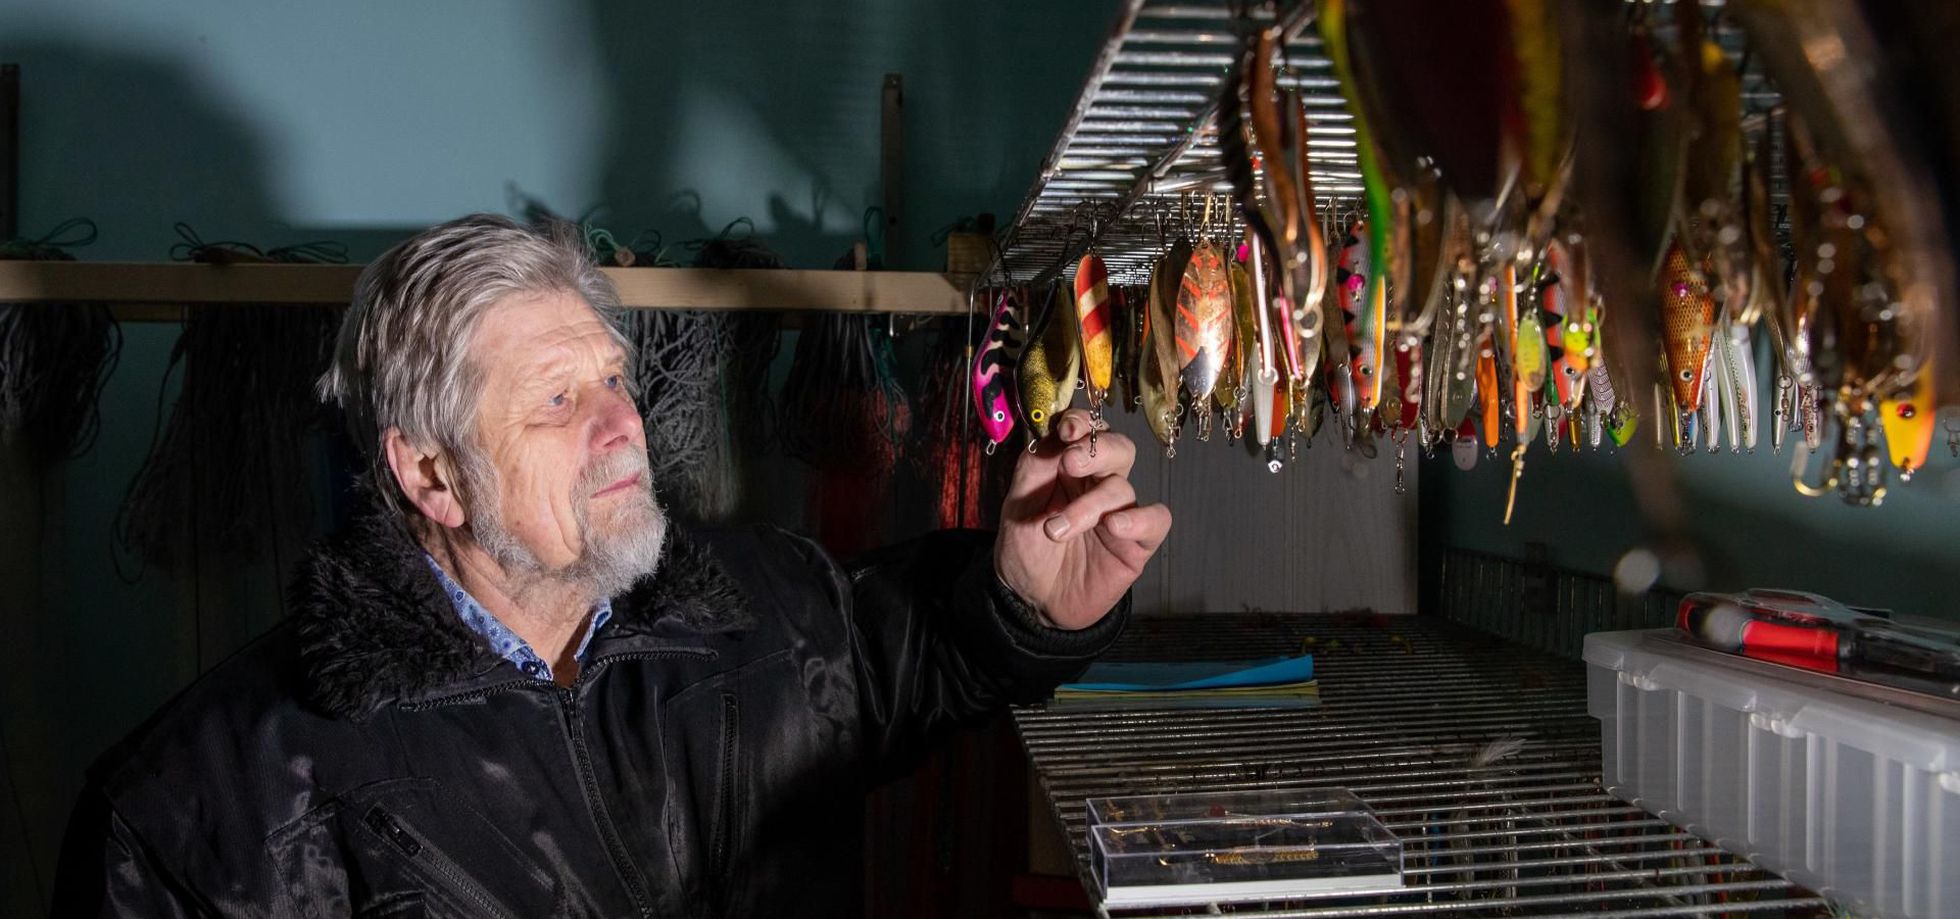 Каждый год Мати ездит в Финляндию на соревнования по ловле щуки, где встречается с руководителями рыбных фирм с обеих сторон залива, ведет беседы и ходит в баню.